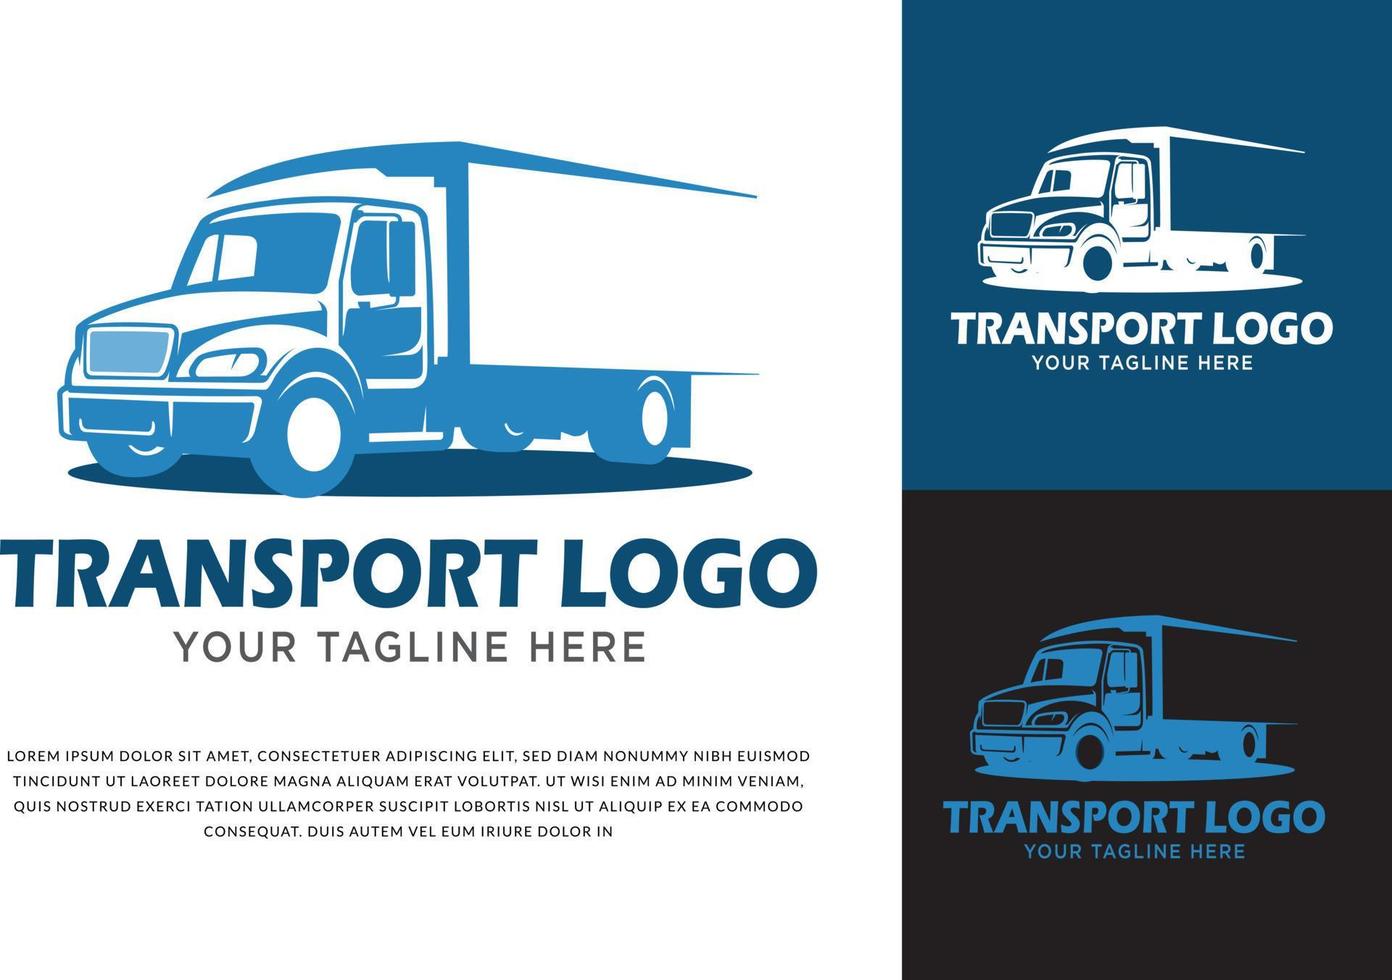 transport logo koncept gratis vektor för lastbil transport företag affärslogotyp designidéer